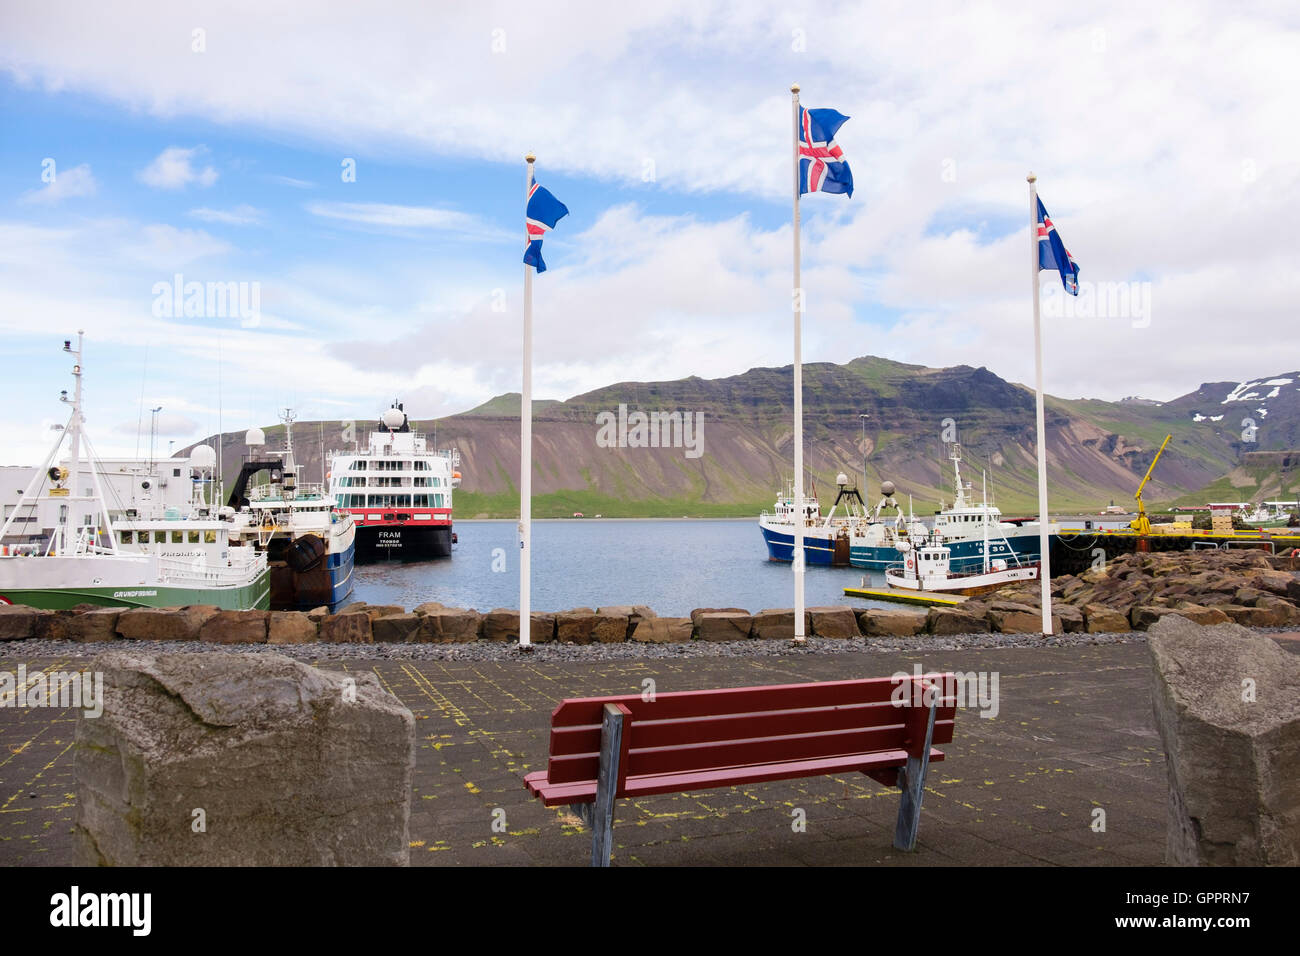 Islandese di bandiere che sventolano sulla banchina con barche da pesca e una nave da crociera ormeggiata in porto. Snaefellsnes Grundarfjordur Islanda Foto Stock